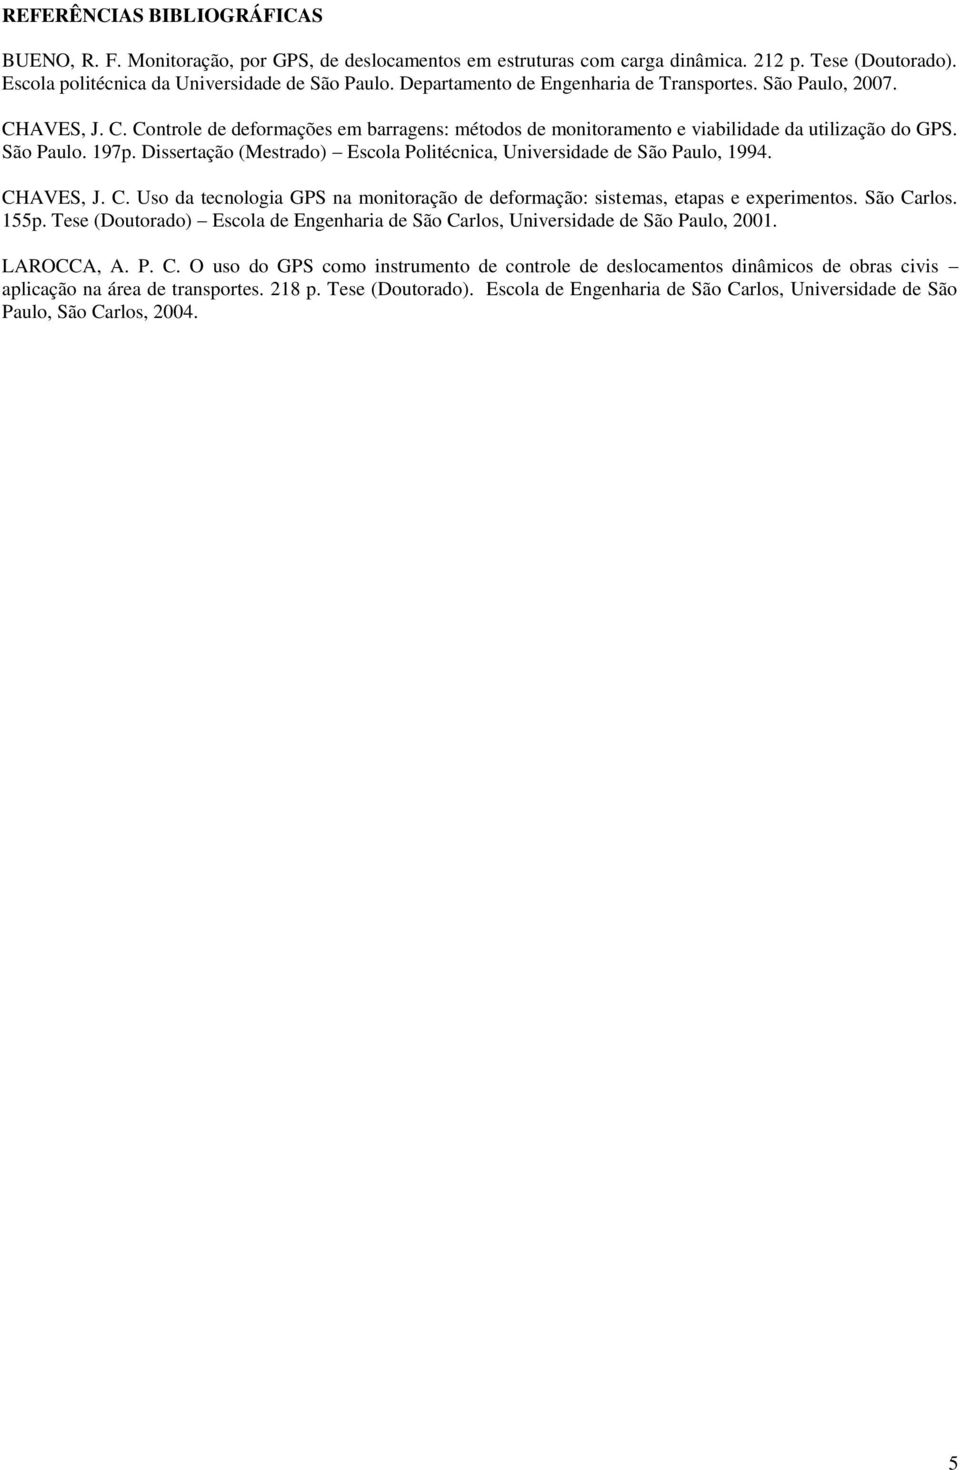 Dissertação (Mestrado) Escola Politécnica, Universidade de São Paulo, 1994. CHAVES, J. C. Uso da tecnologia GPS na monitoração de deformação: sistemas, etapas e experimentos. São Carlos. 155p.